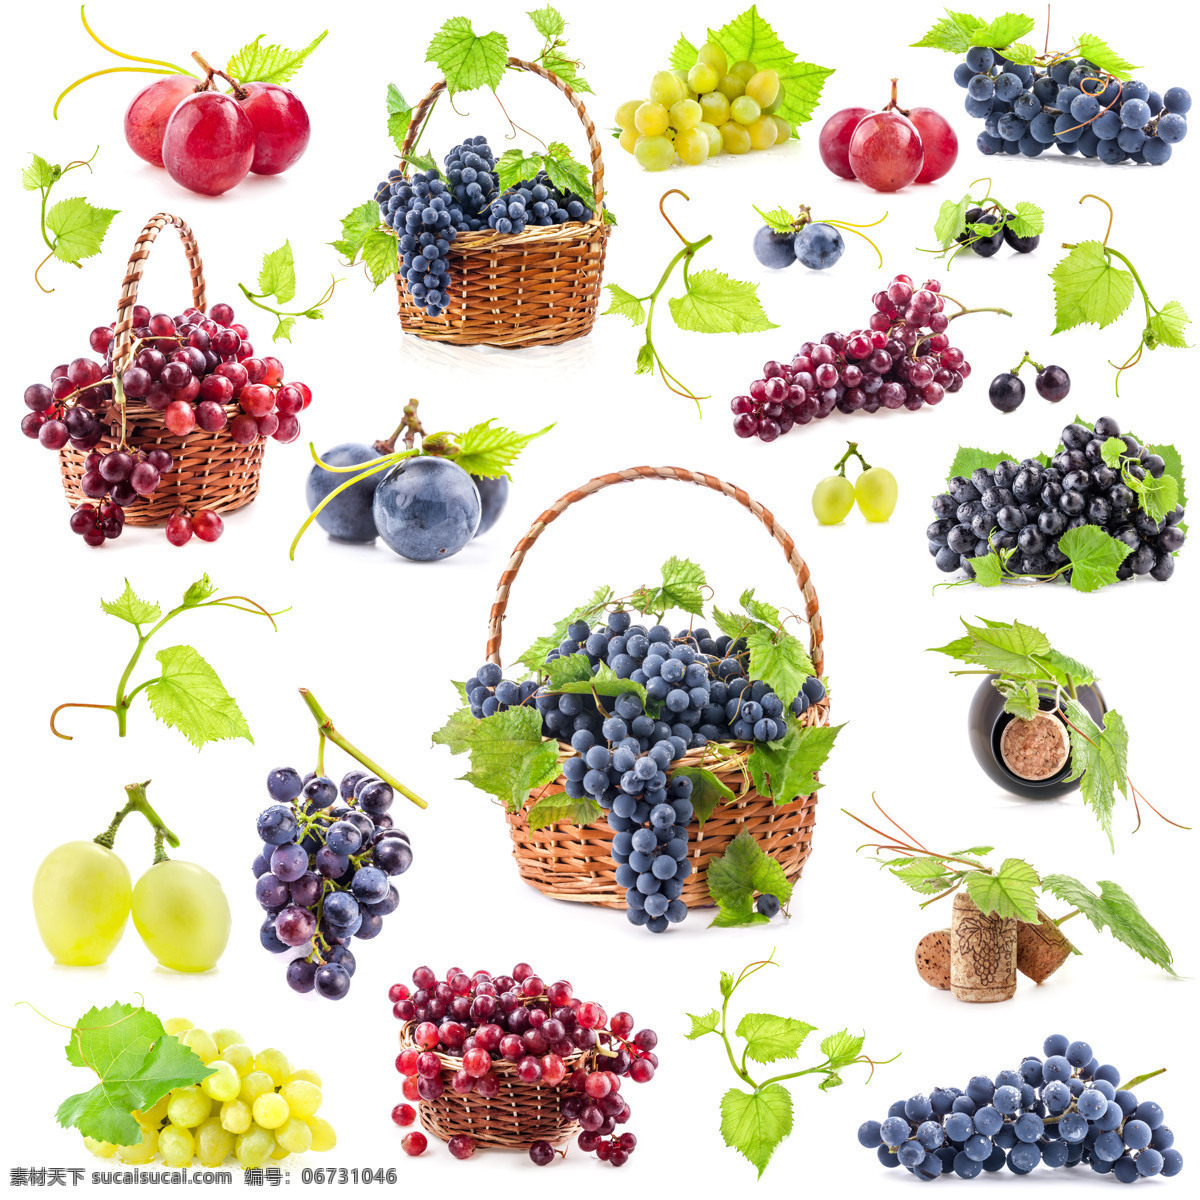 黄葡萄 紫葡萄 绿葡萄 红葡萄 提子 红提 黑葡萄 水果 新鲜水果 维生素 营养 食品 食物 进口葡萄 生态葡萄 有机葡萄 餐饮美食 食物原料